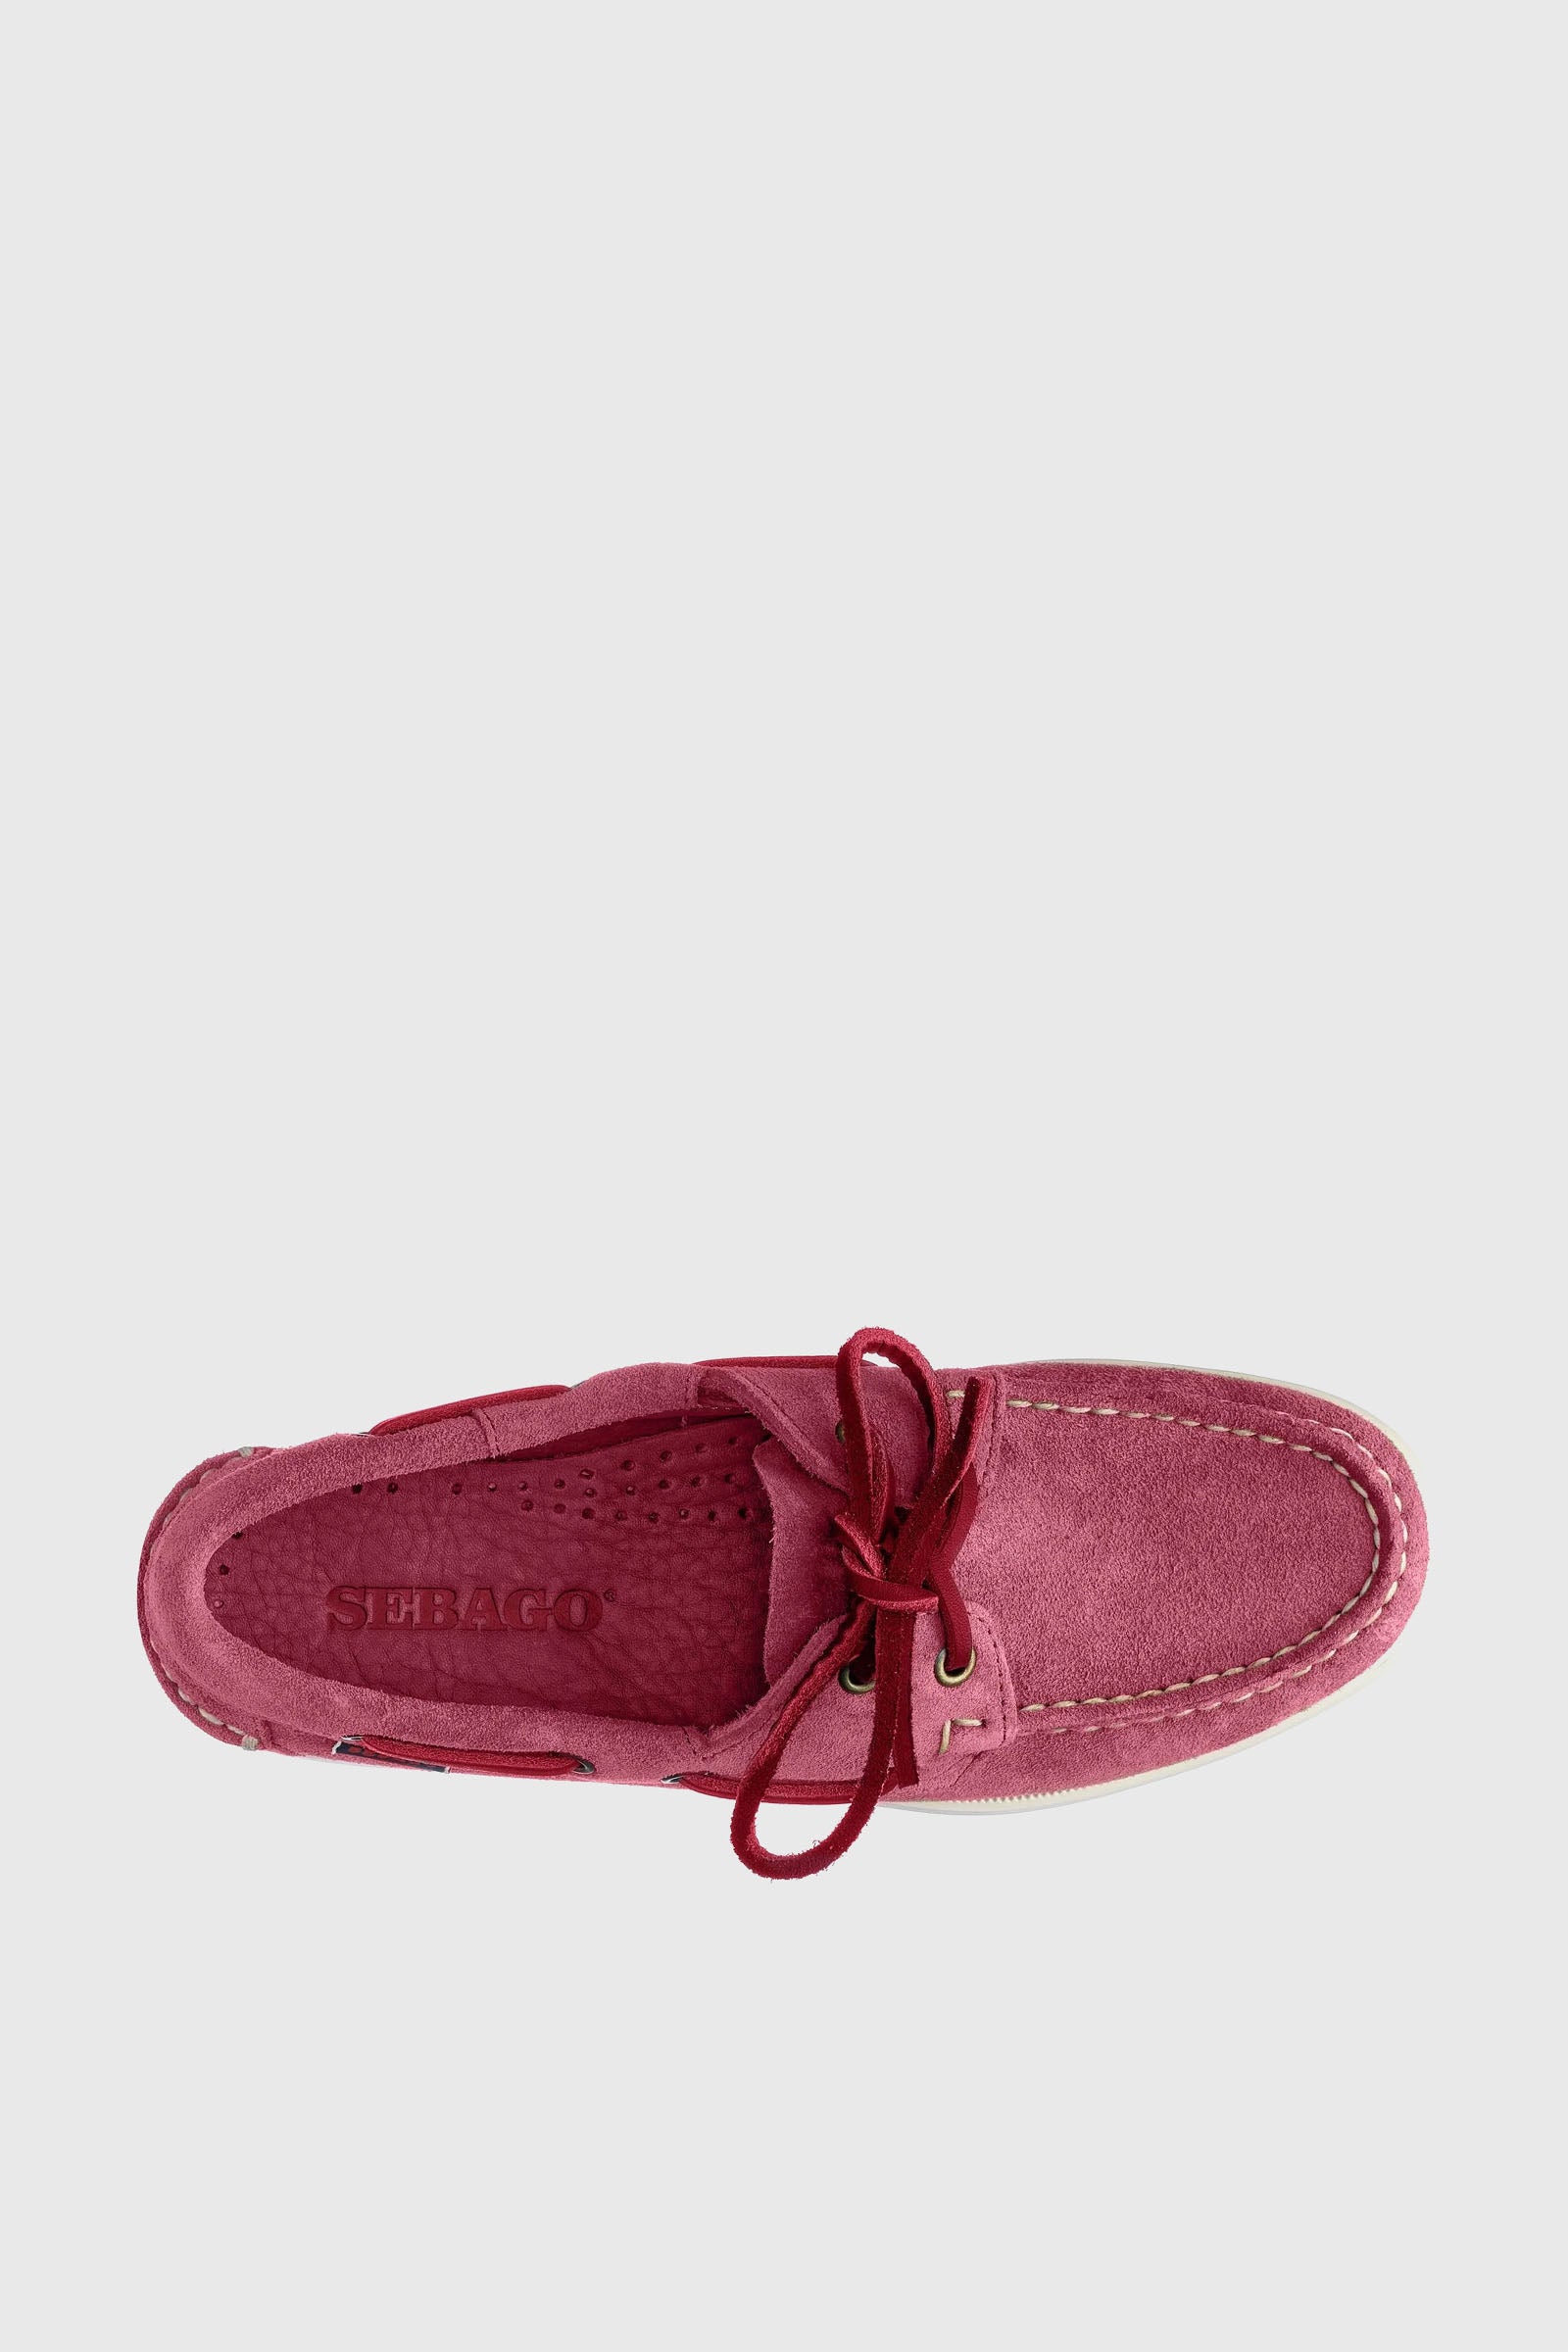 Sebago Docksides Portland Flesh Out Leather Loafer in Pink - 2